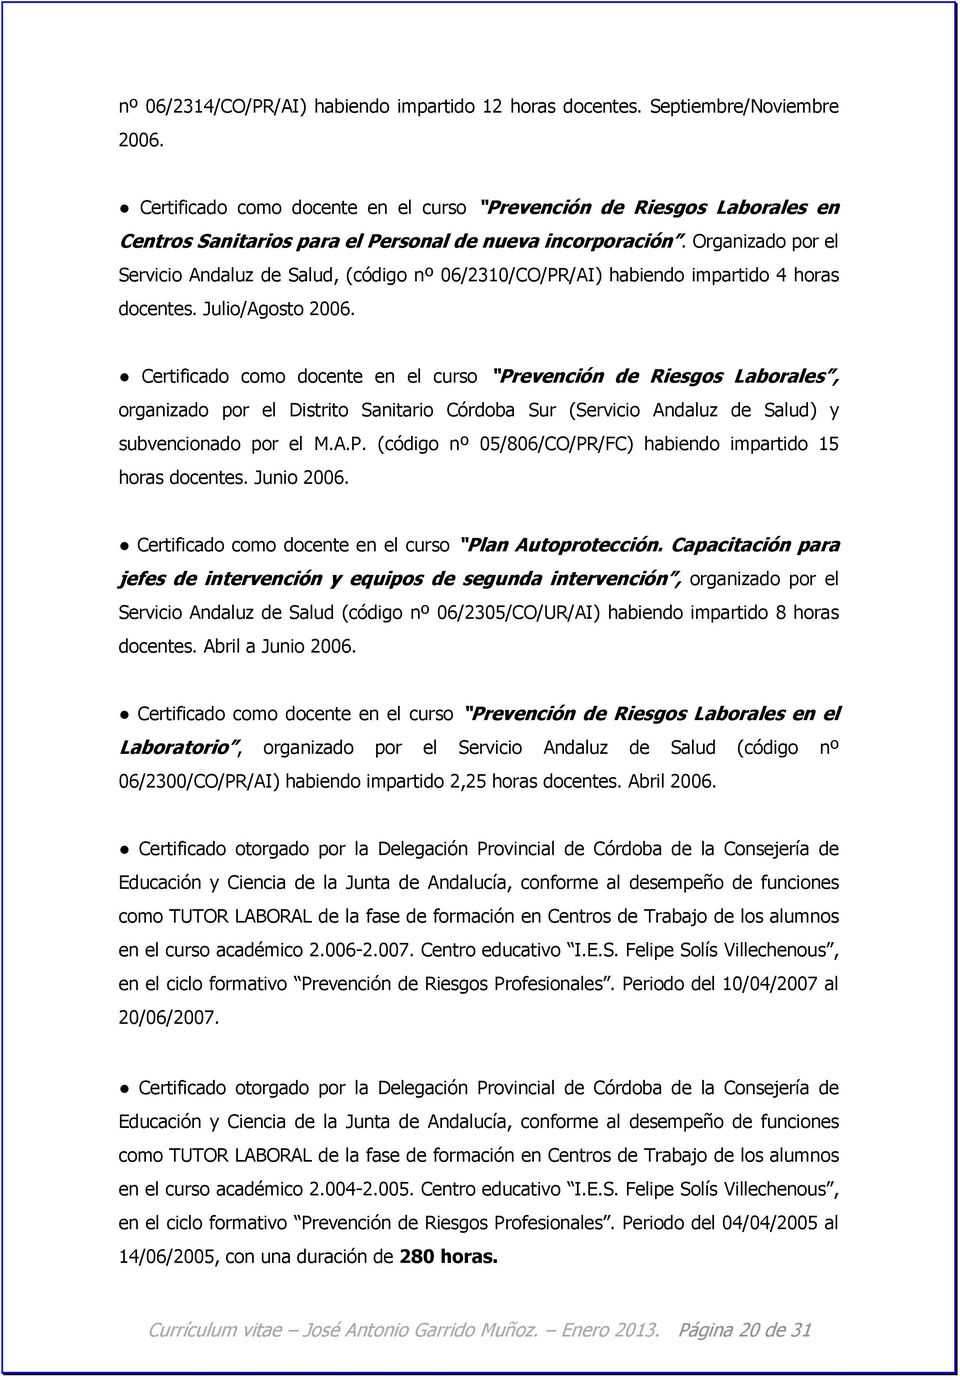 Organizado por el Servicio Andaluz de Salud, (código nº 06/2310/CO/PR/AI) habiendo impartido 4 horas docentes. Julio/Agosto 2006.